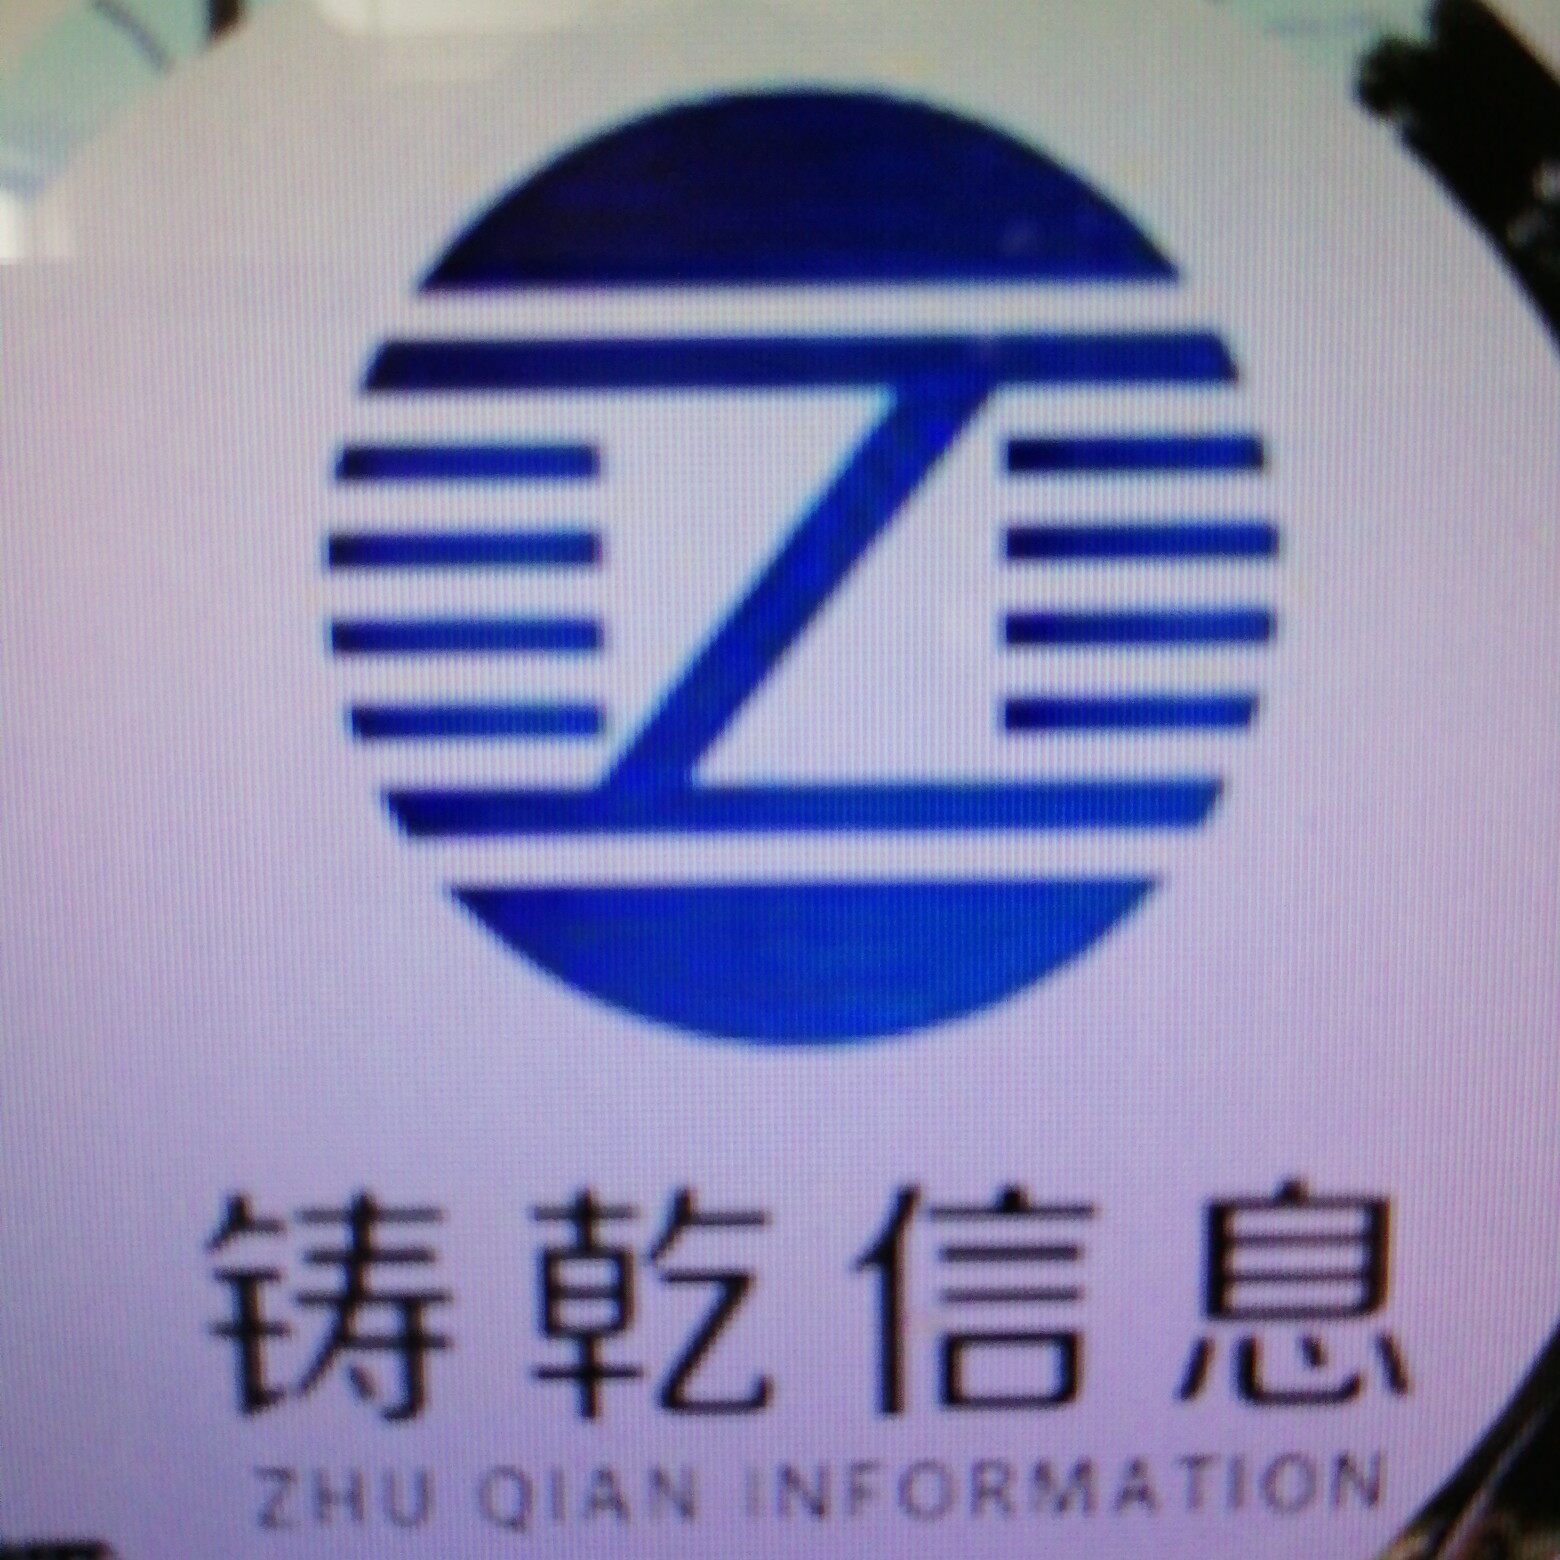 上海铸乾信息科技有限公司